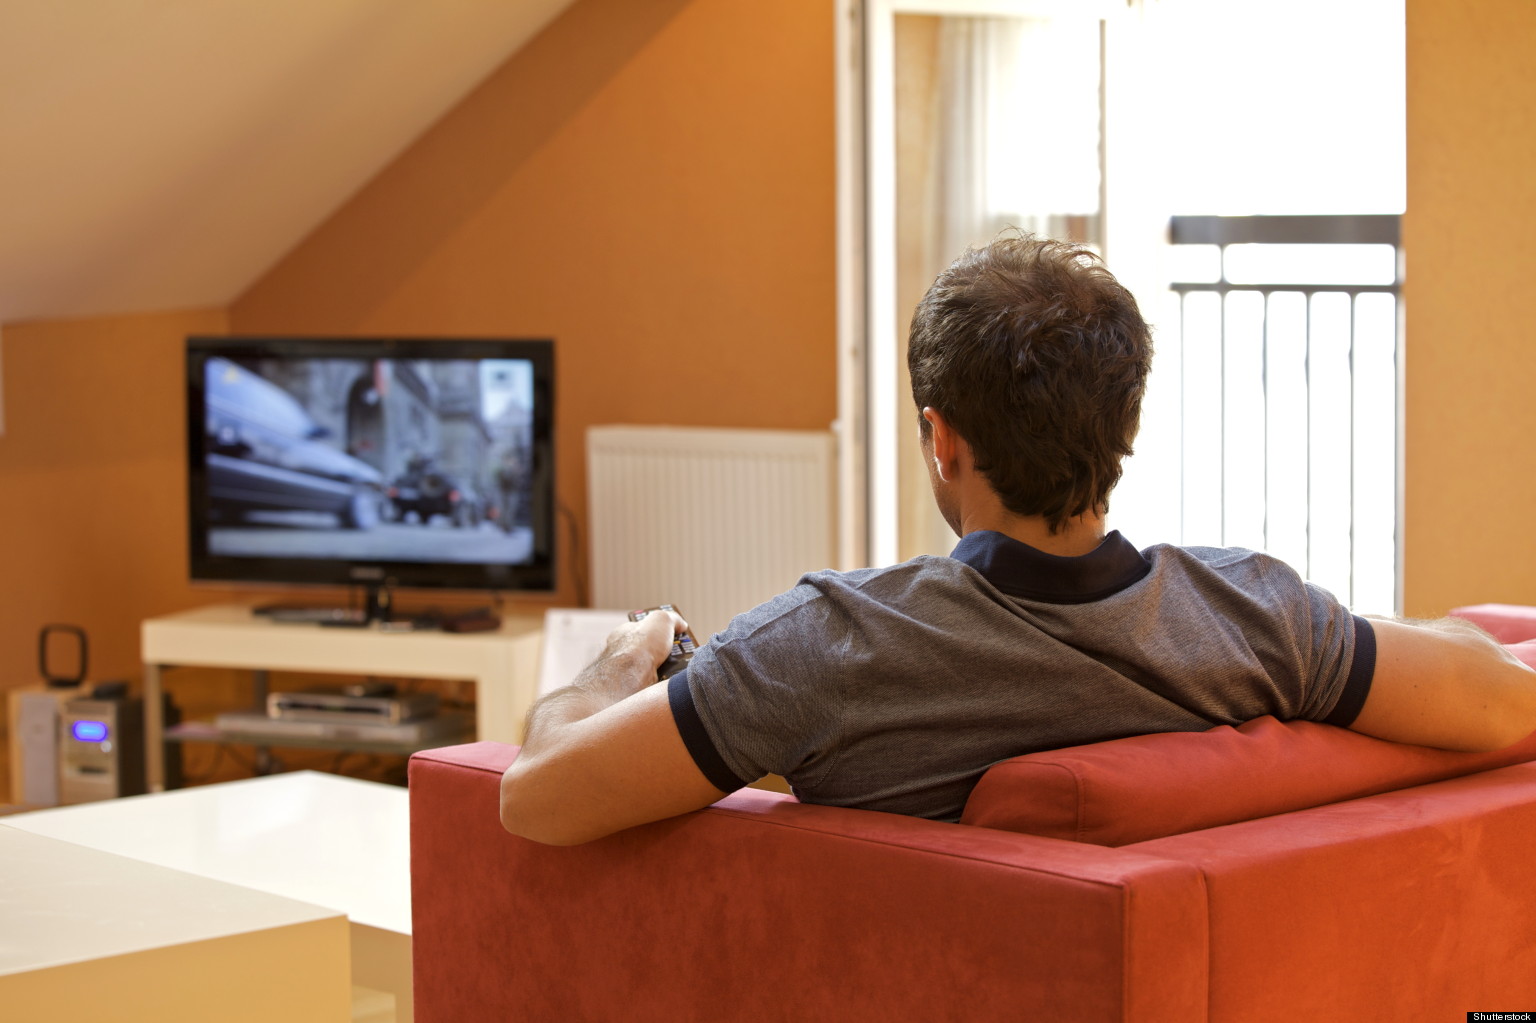  El exceso de televisión deteriora tu cerebro